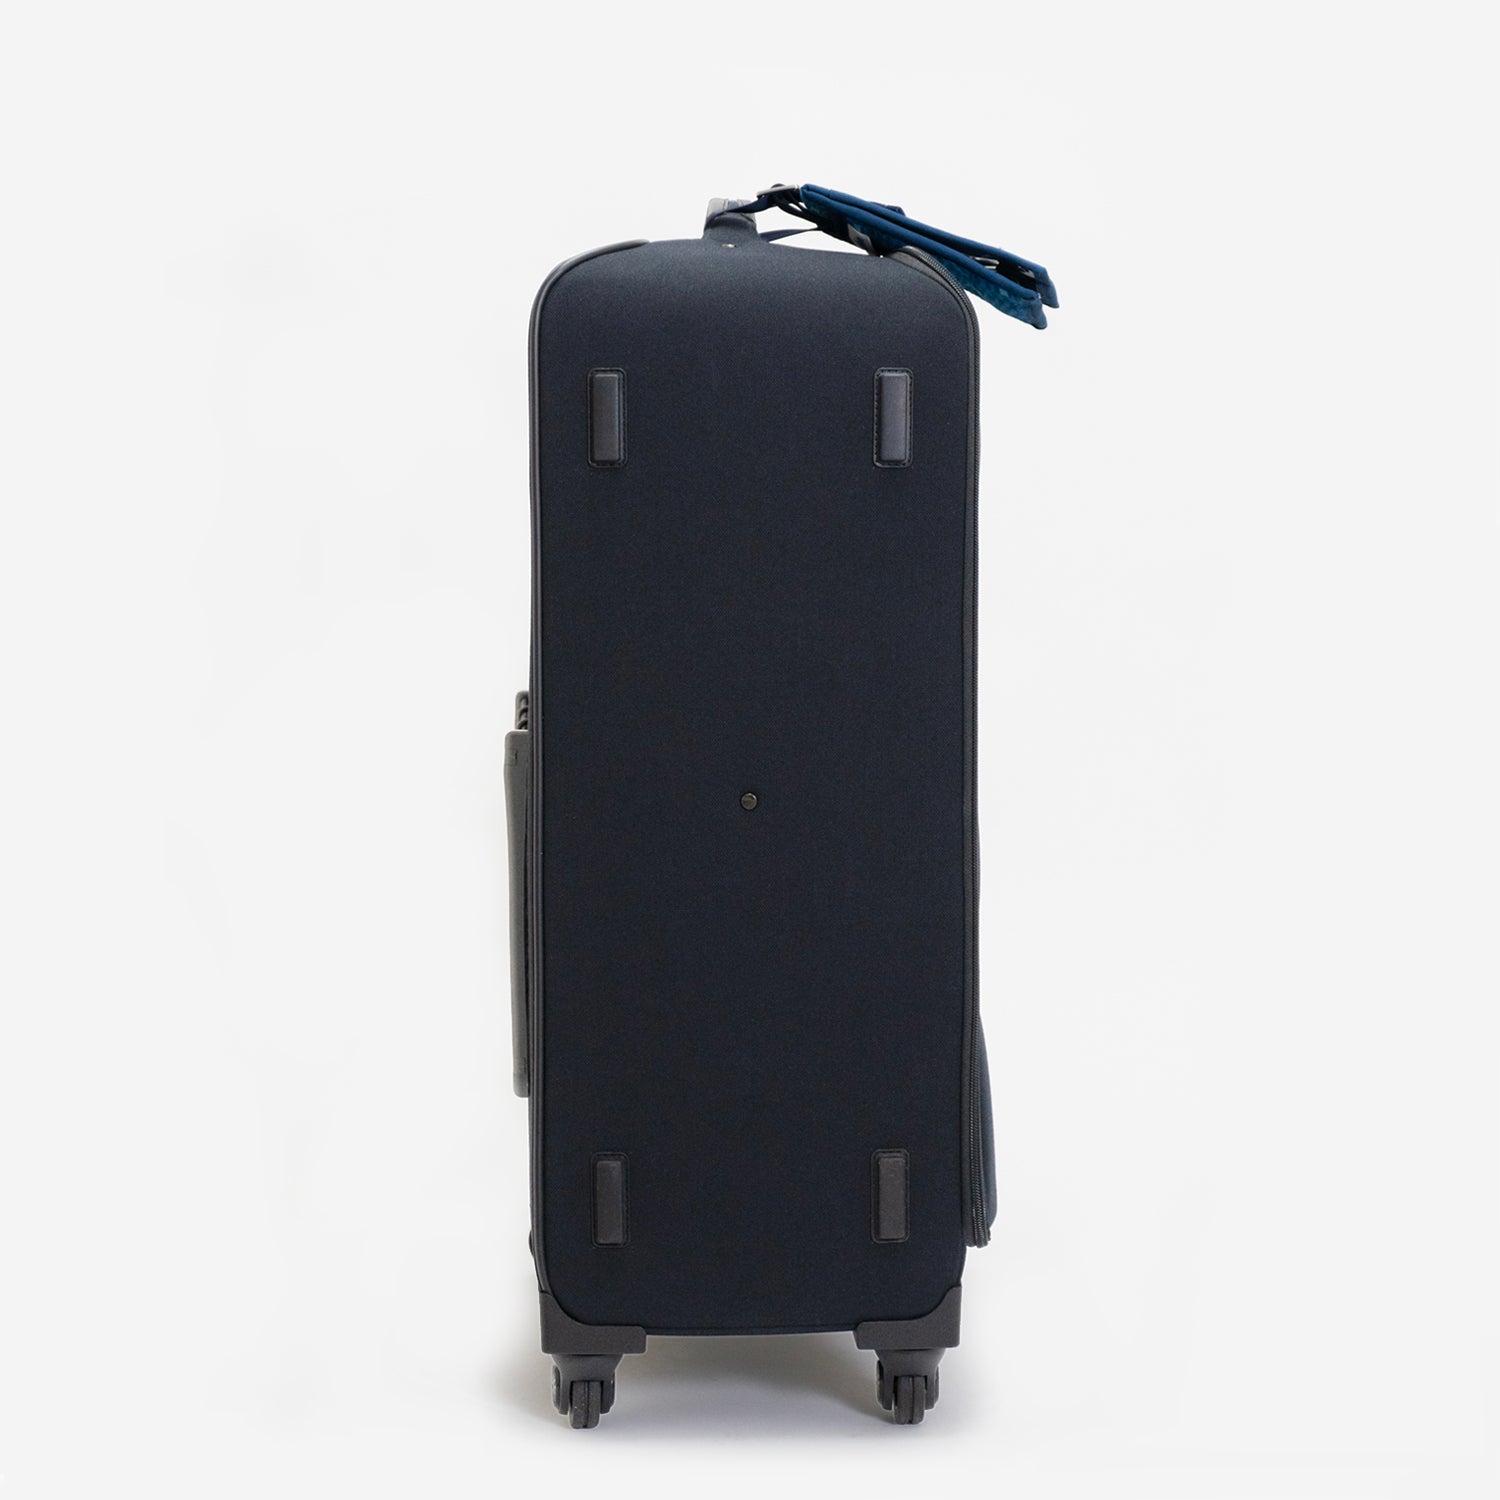 N700系typeA東海道新幹線普通車に使用されているブルーの座席生地を使用した、チケットホルダー付きソフトスーツケース（キャリーケース）「N700系typeA東海道新幹線モケットソフトスーツケース」預け入れサイズ。側面には側面には家の中やホテルでスーツケースを床に置いたり、開閉する際に安定しやすいグライド付き。